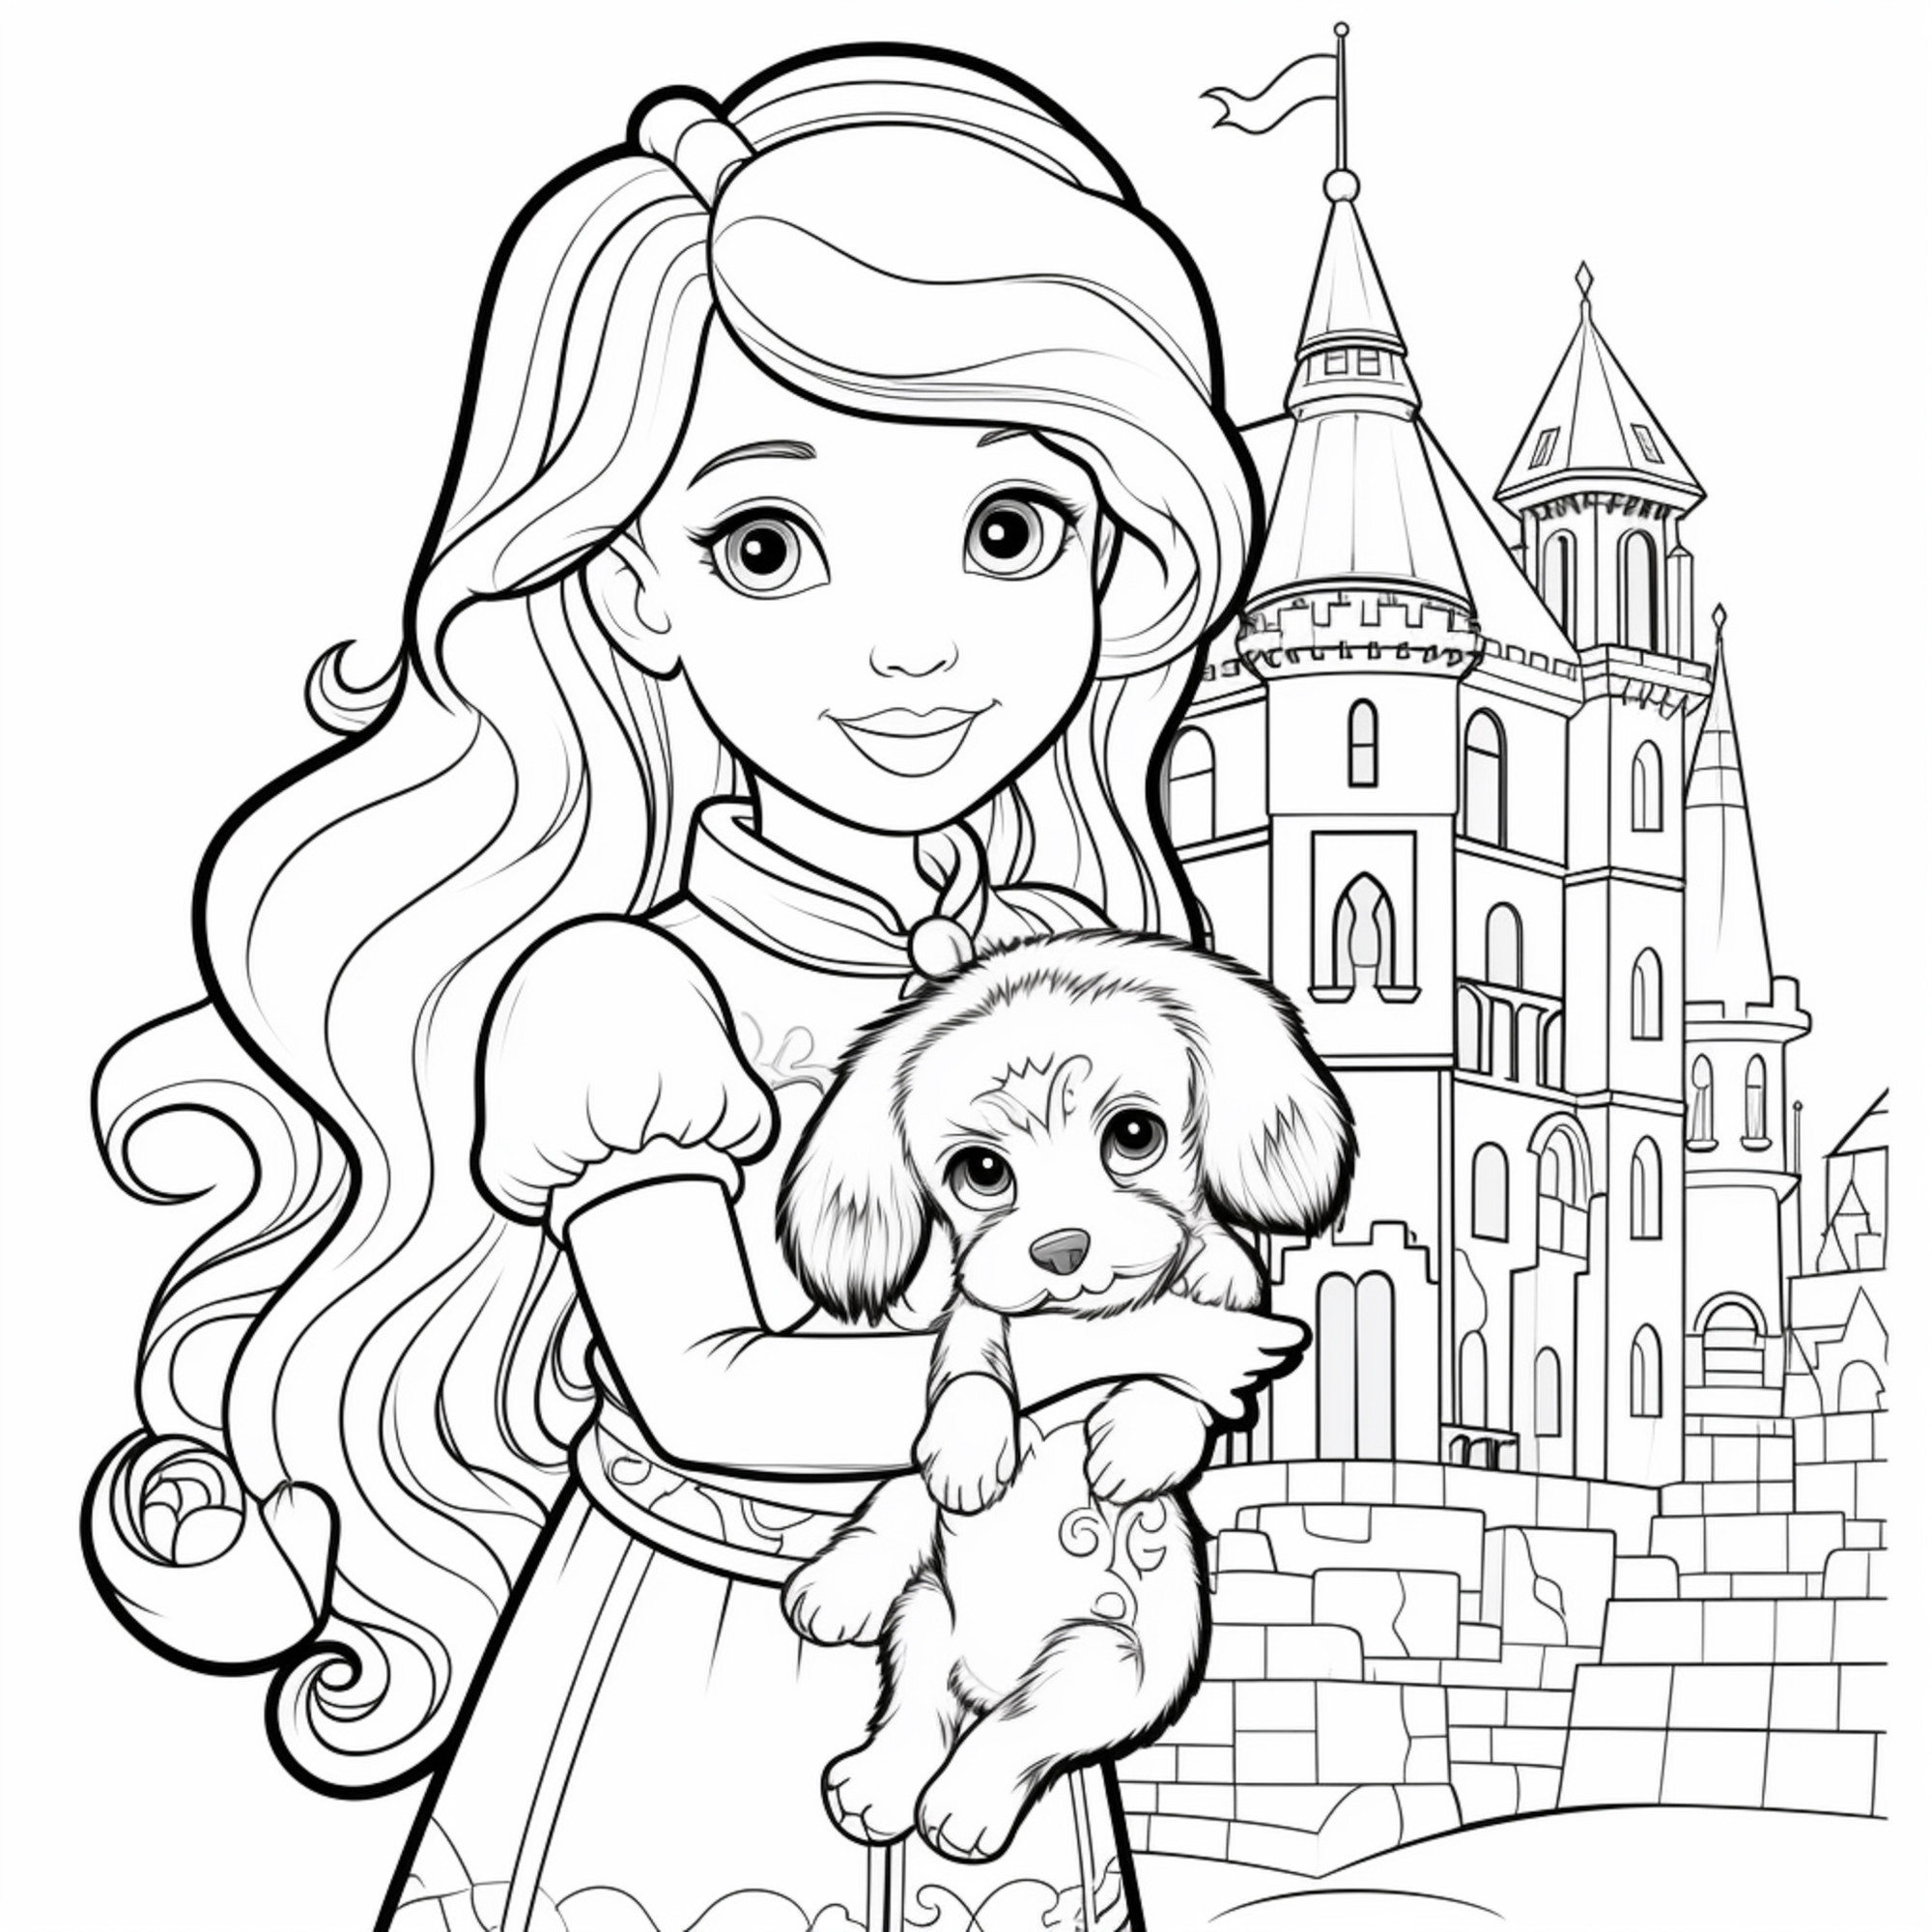 Раскраска для детей: принцесса Аврора с щенком на руках перед замком